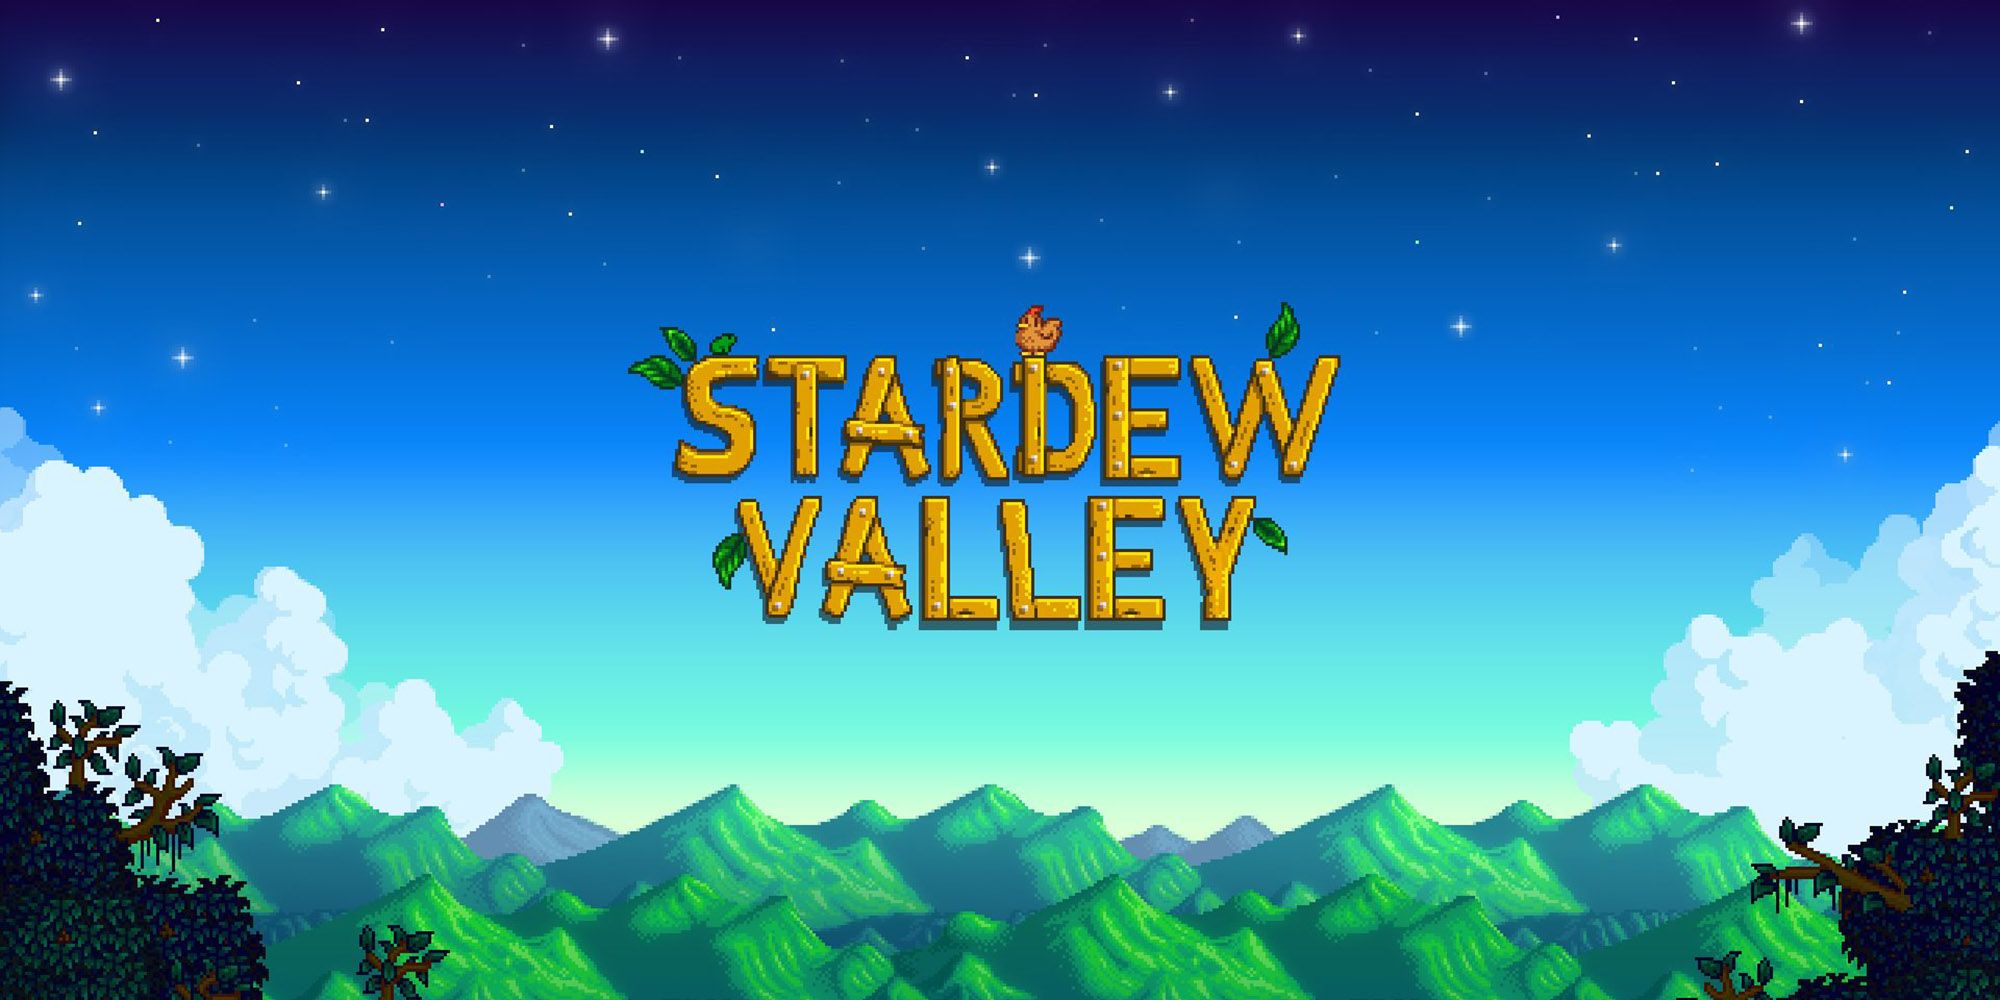 stardew valley 1.5 update